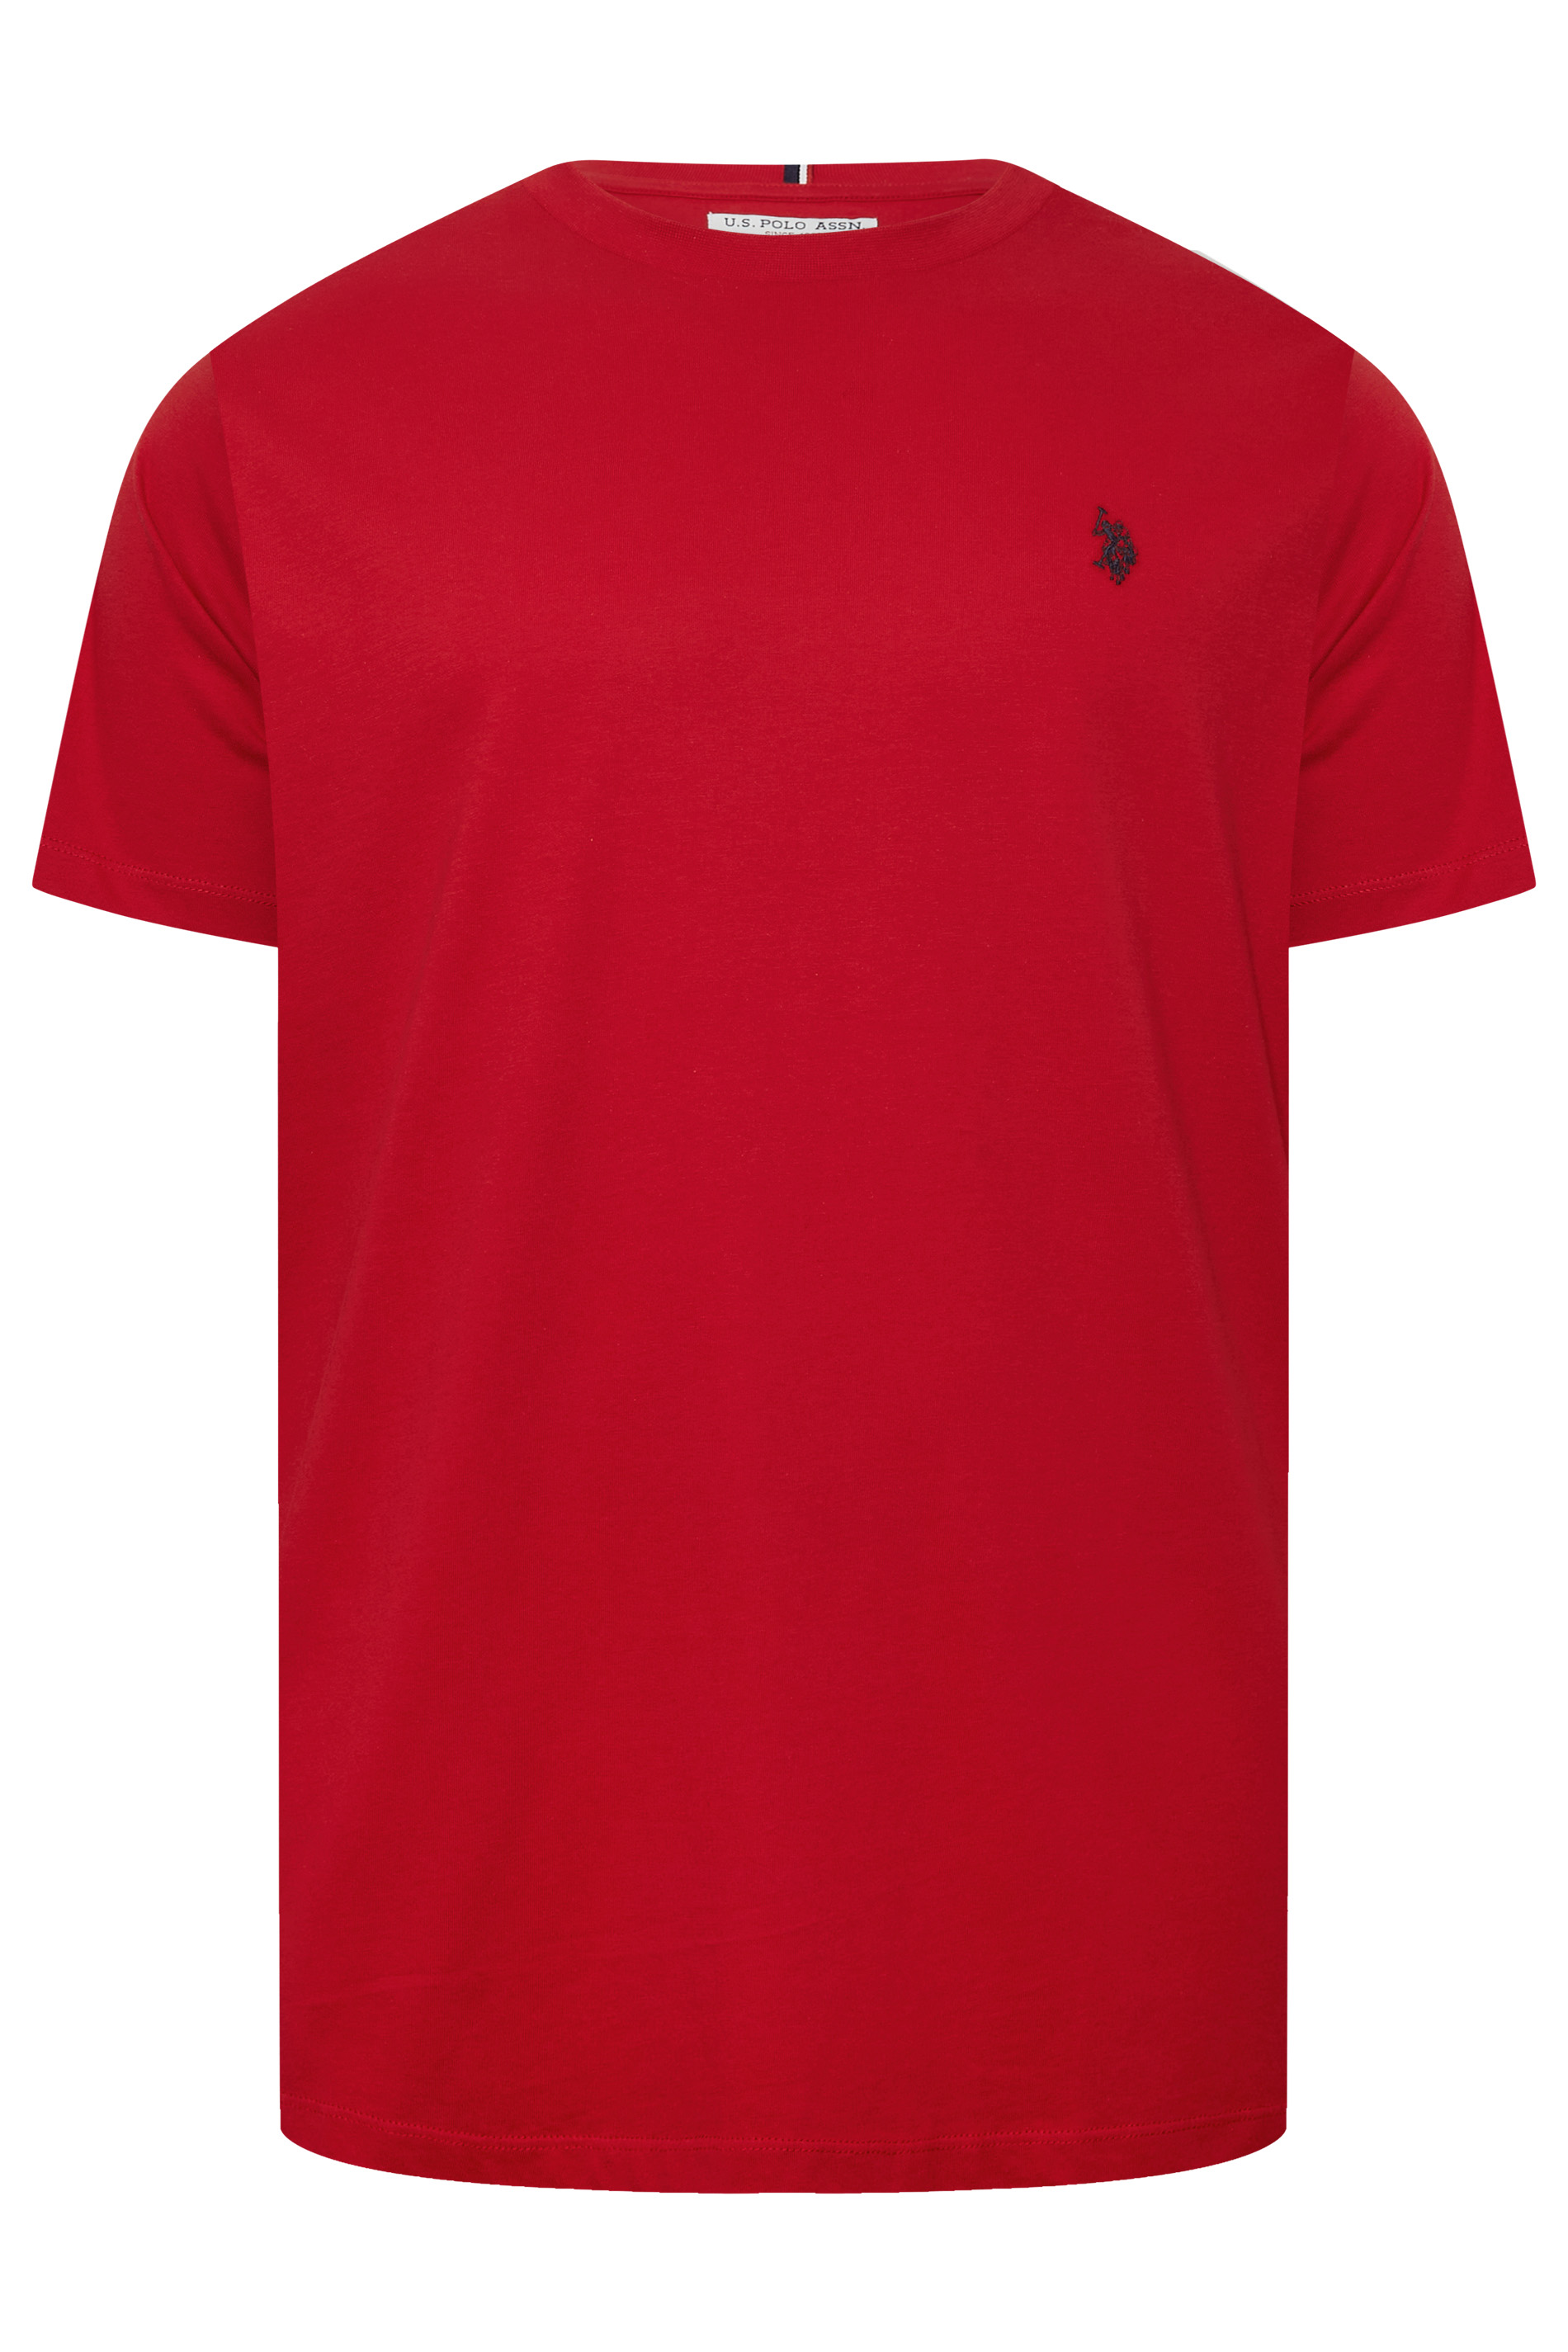 U.S. POLO ASSN. Big & Tall Red Core T-Shirt | BadRhino 3